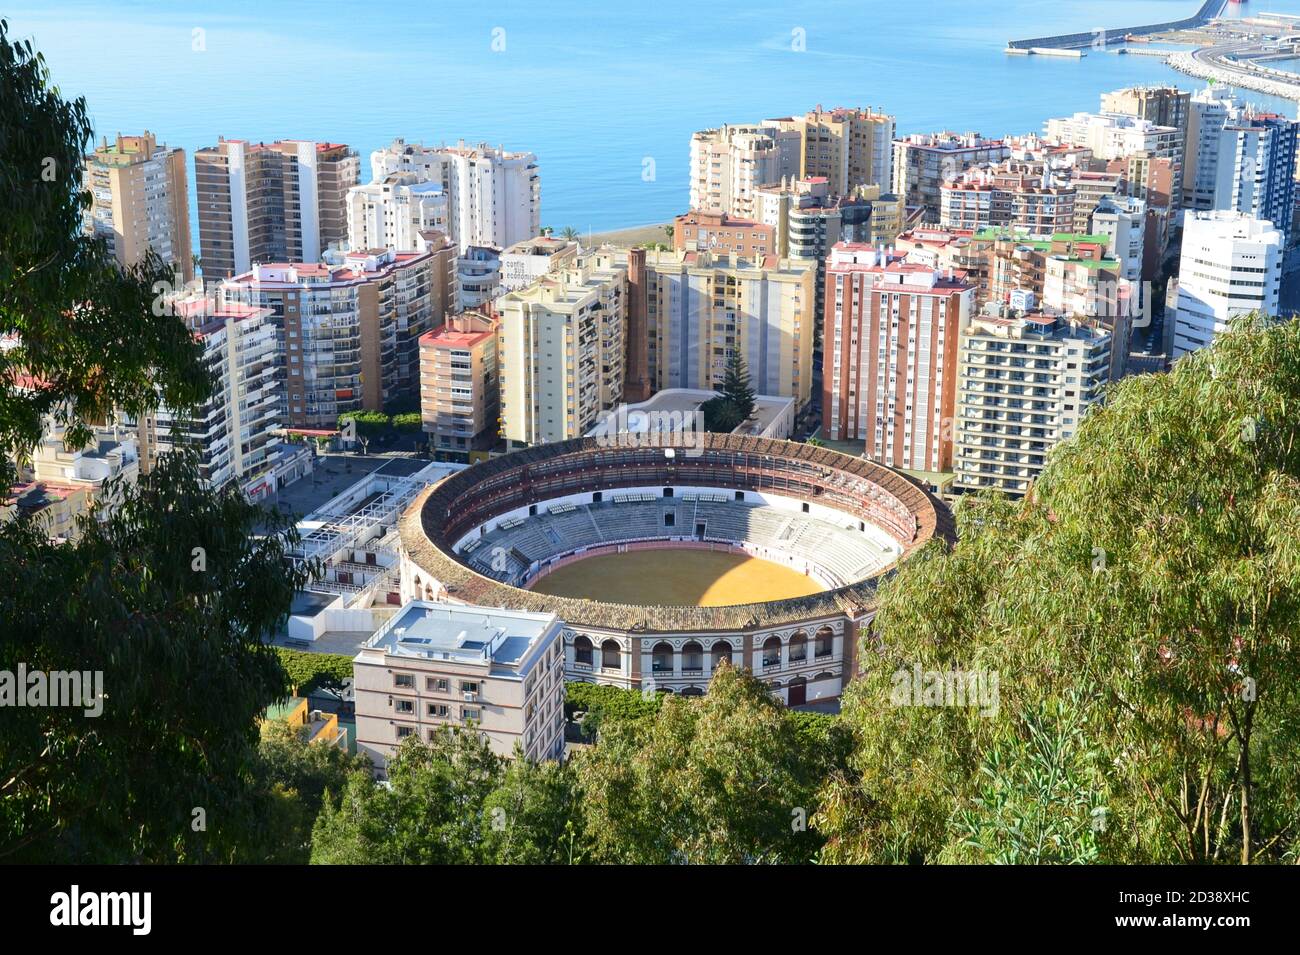 Spagna, Malaga, questa città di Andalusia ha molti monumenti, un teatro romano, le arene e la casa natale di Pablo Picasso. Foto Stock